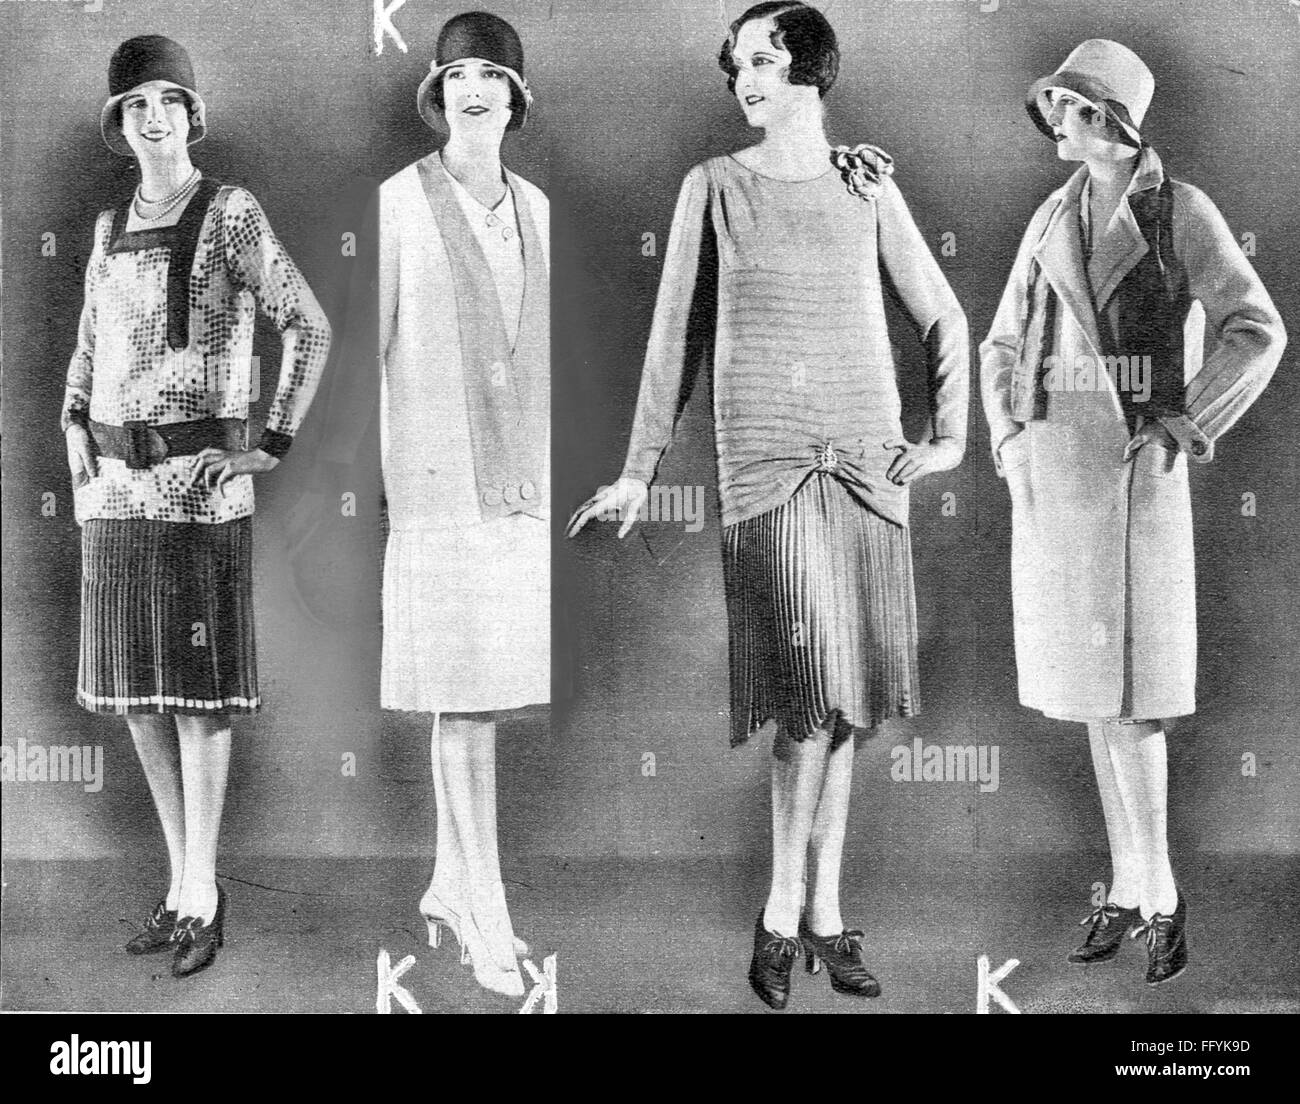 Mode, 1920er Jahre, Kleider für verschiedene Anlässe, aus: 'Panorama',  Frühjahr 1928, Additional-Rights-Clearences-not available Stockfotografie -  Alamy